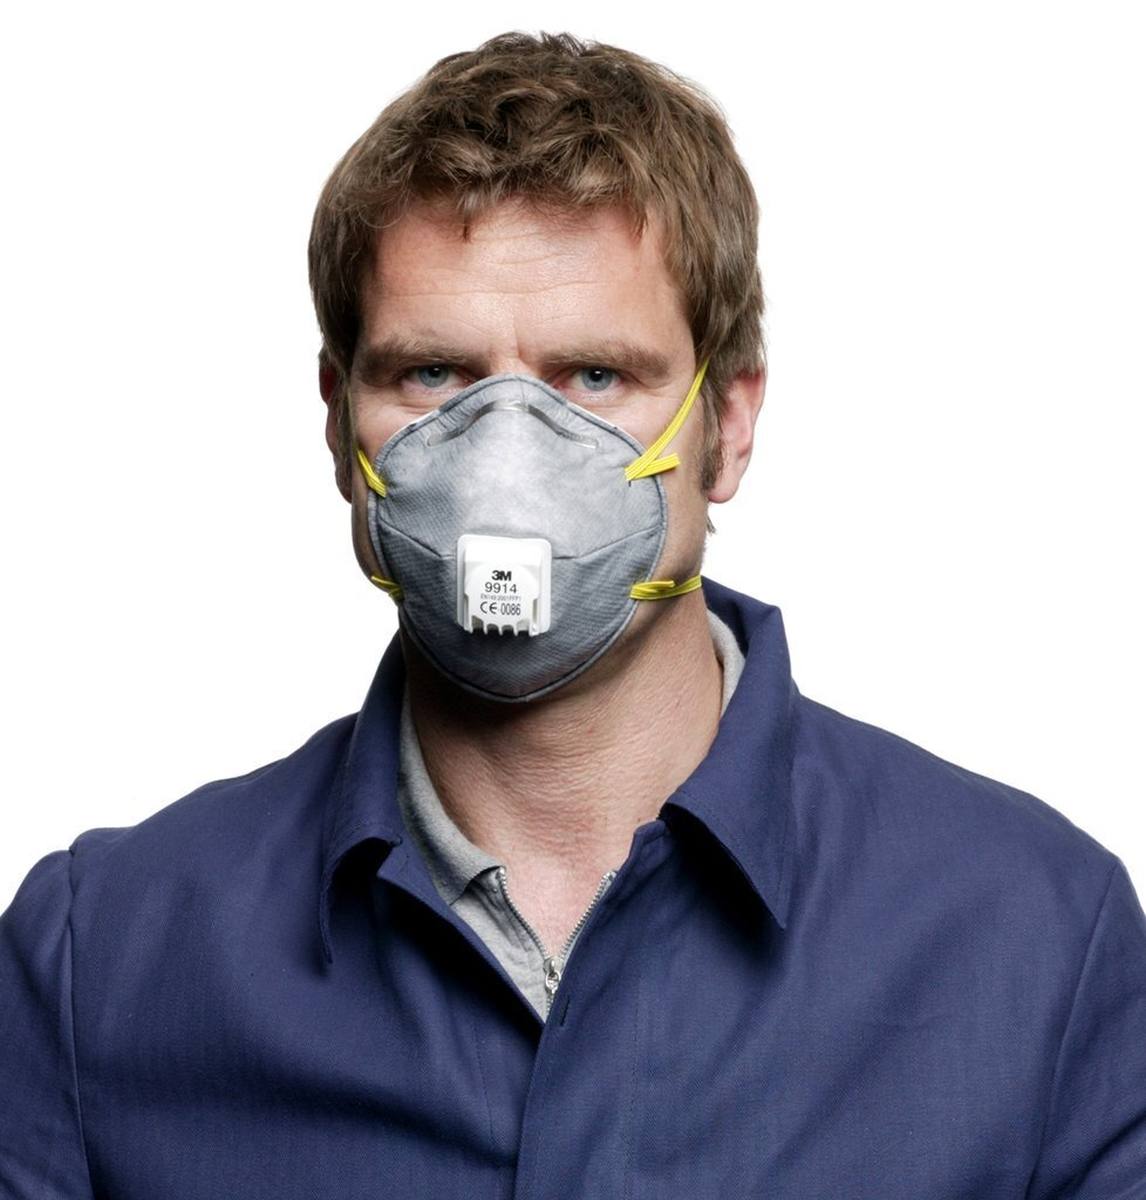 3M 9914 Máscara de protección contra olores FFP1 con válvula de exhalación de flujo frío, hasta 4 veces el valor límite y contra olores orgánicos por debajo del valor límite